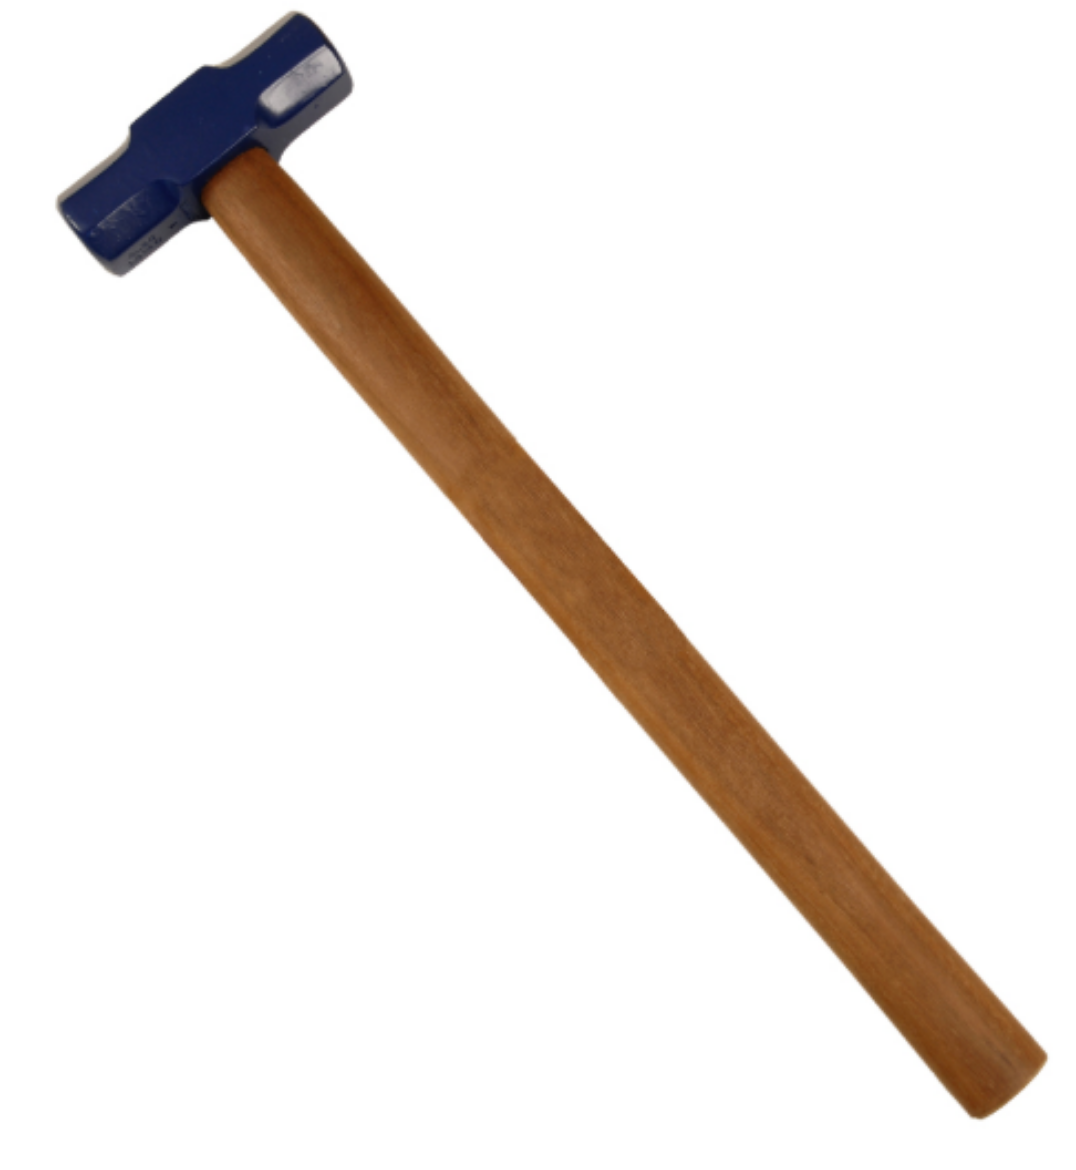 Picture of Sledge Hammer 4lb/1.8kg, Hardwood Handle 600mm